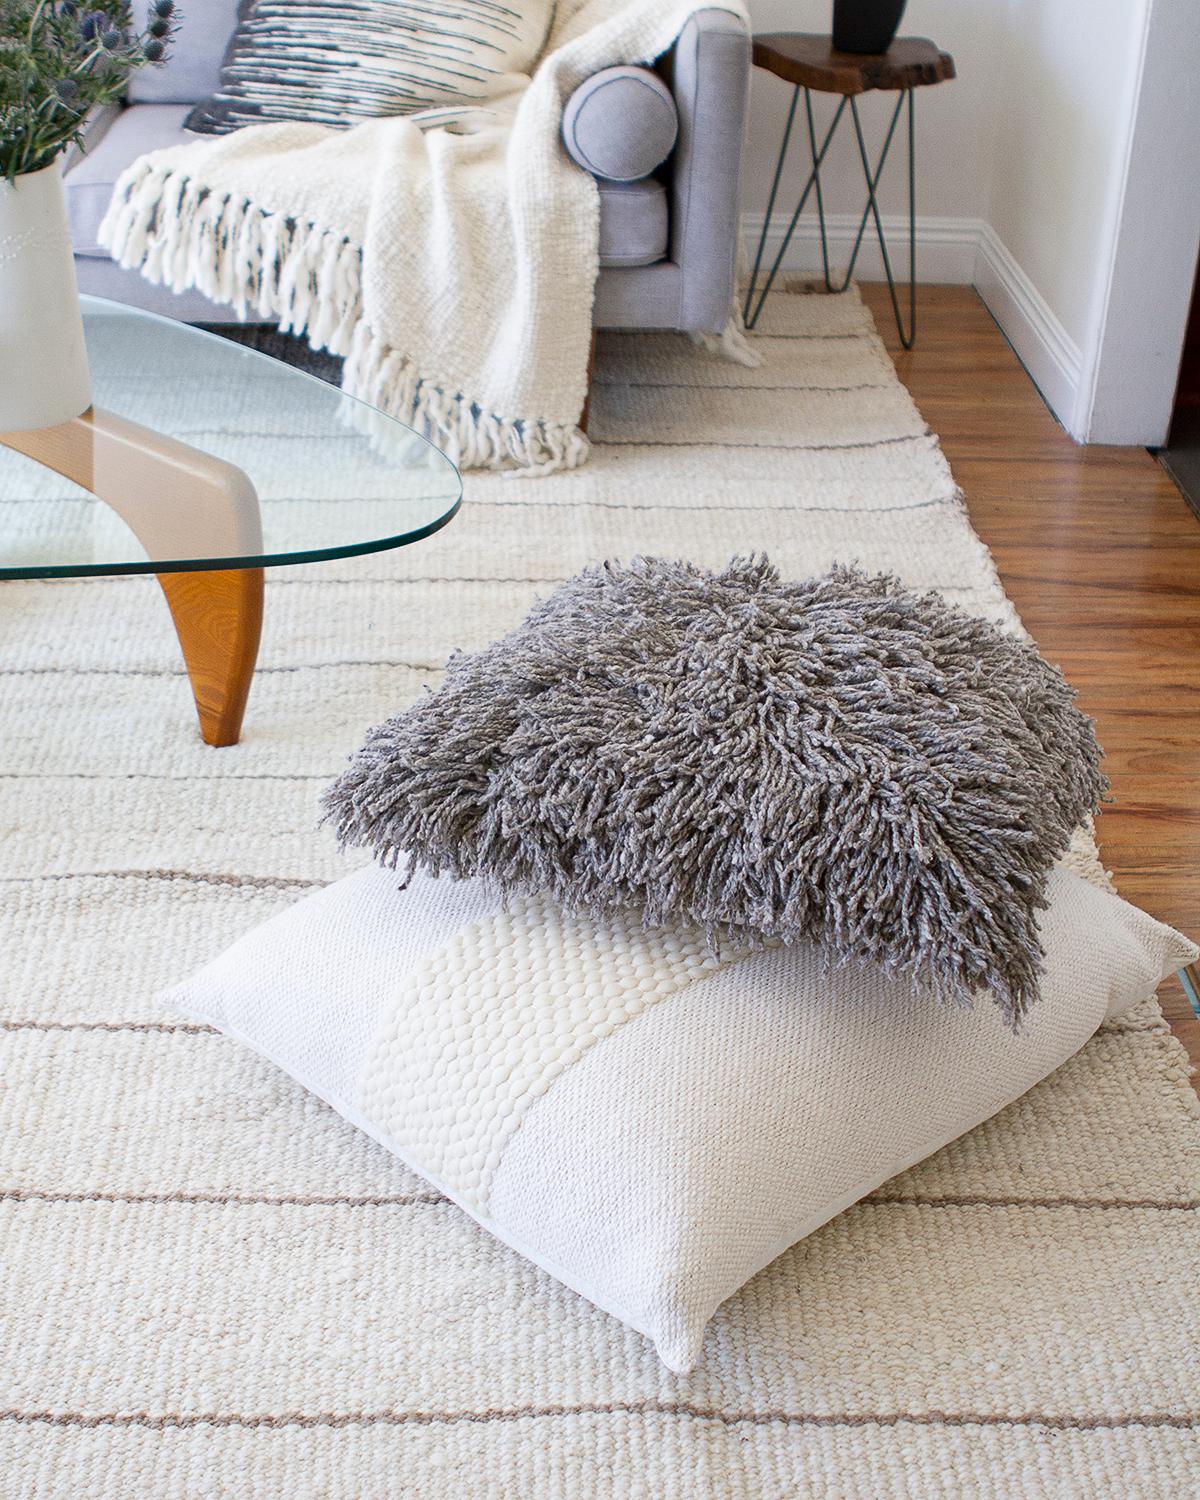 Ein zotteliges Kissen zur Verschönerung Ihres Wohnzimmers. Wir stellen vor: Awanay Sur Pillows - unsere lustigen, handgefertigten Wollkissen mit einem verspielten Touch. Diese fair gehandelten und im Boho-Stil gehaltenen Zottelkissen sind die